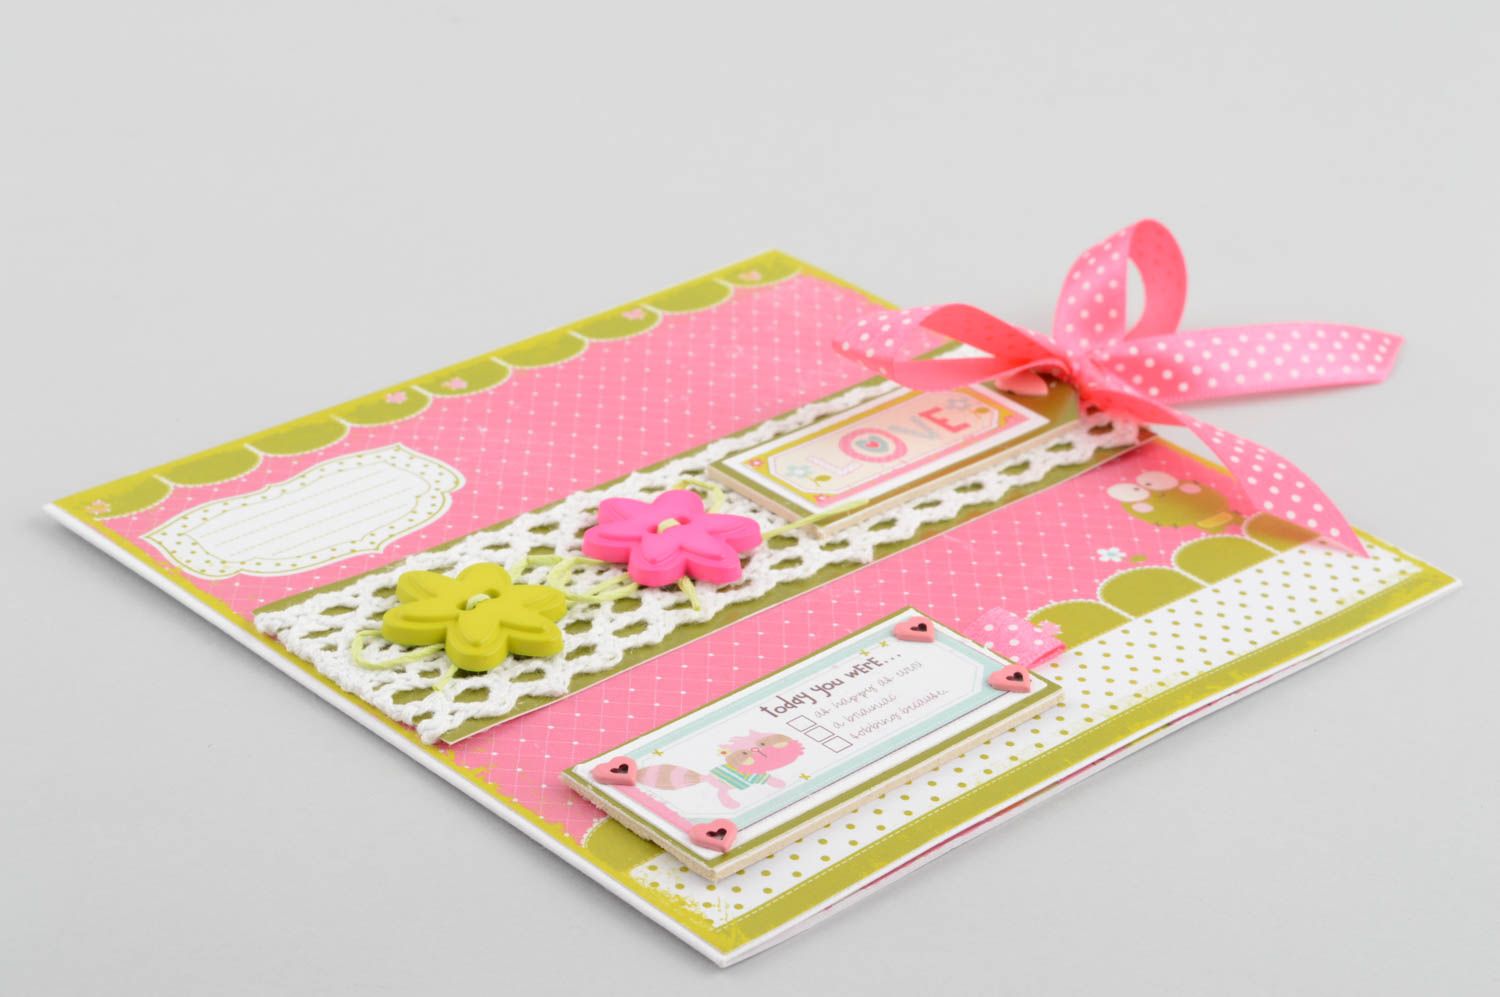 Handmade CD Hülle aus Papier kreatives Geschenk schöne Verpackung rosa foto 3